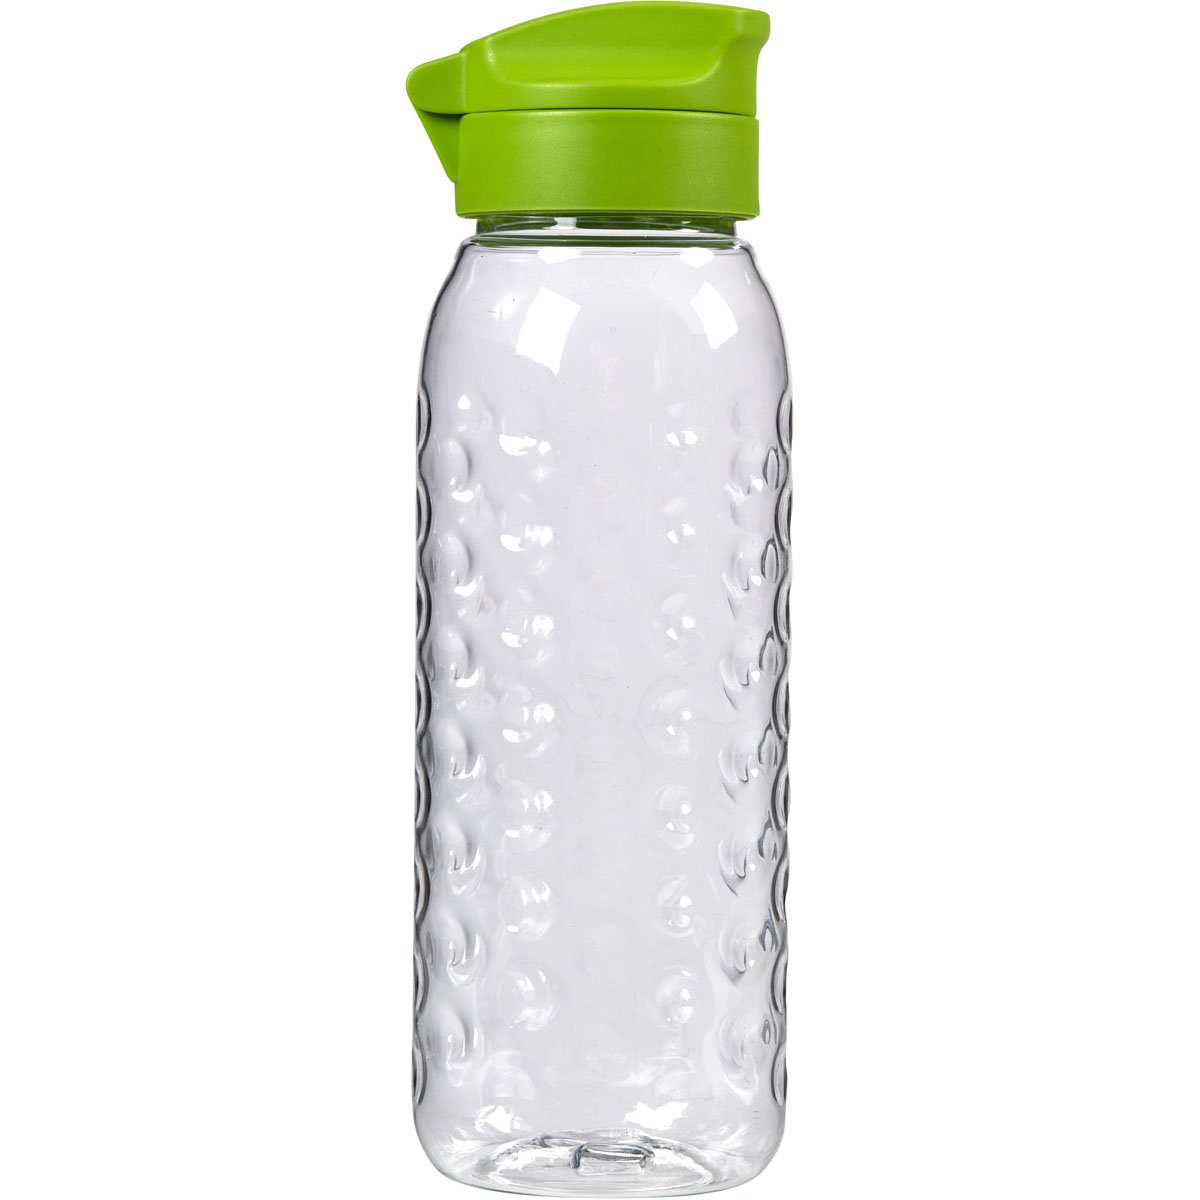 SMART fľašu 0,45L zelená